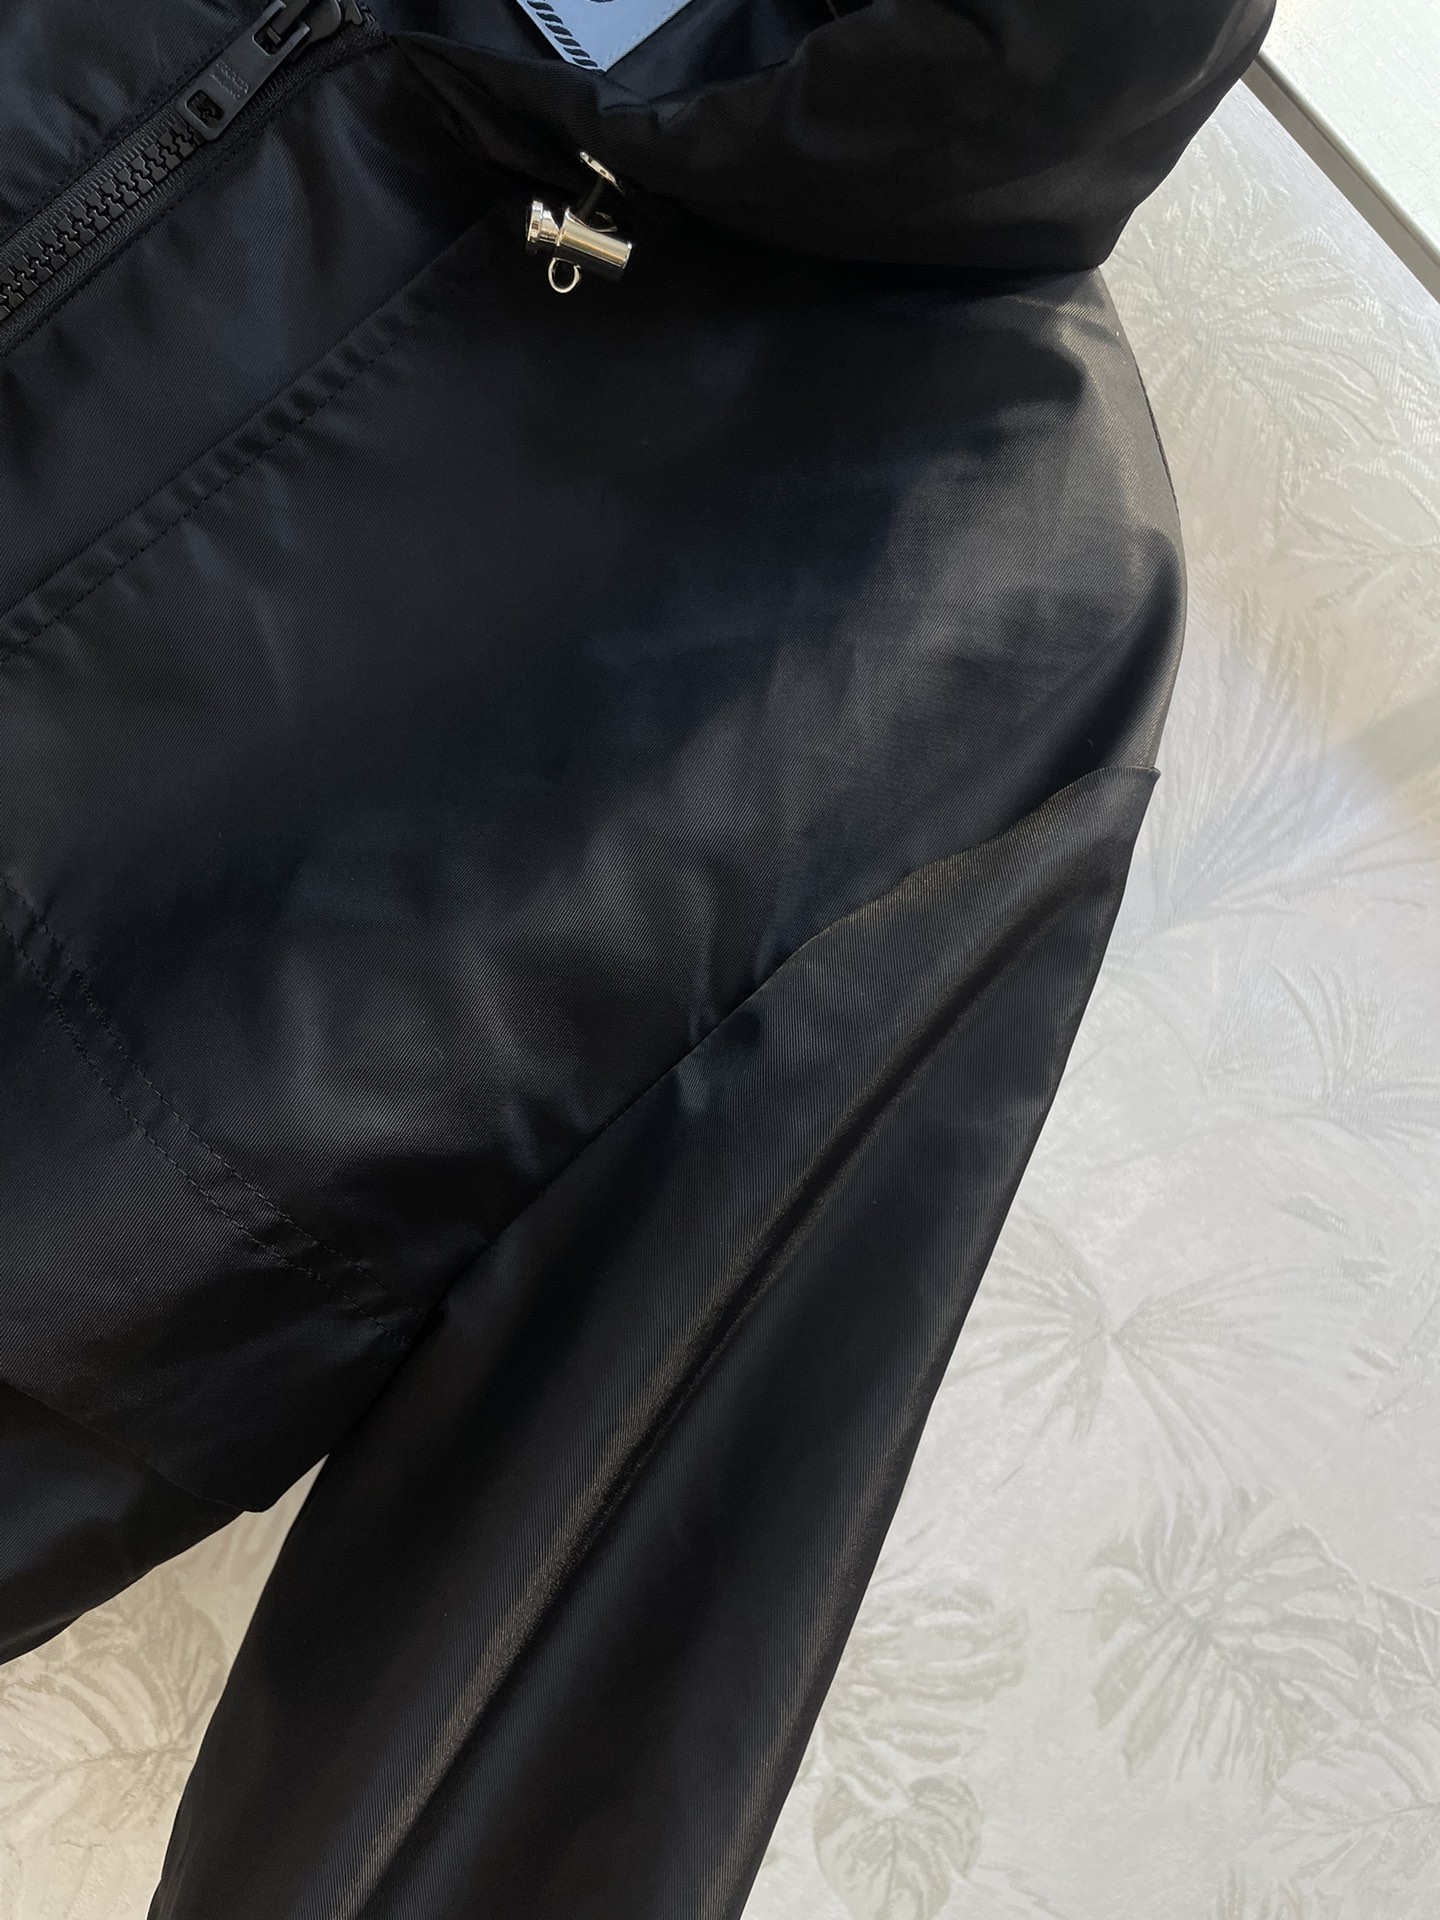 PD24新款双口袋尼龙收腰冲锋衣夹克很有设计感的一件面料很挺括上身有型不会软塌腰部抽绳收腰设计可以很好的